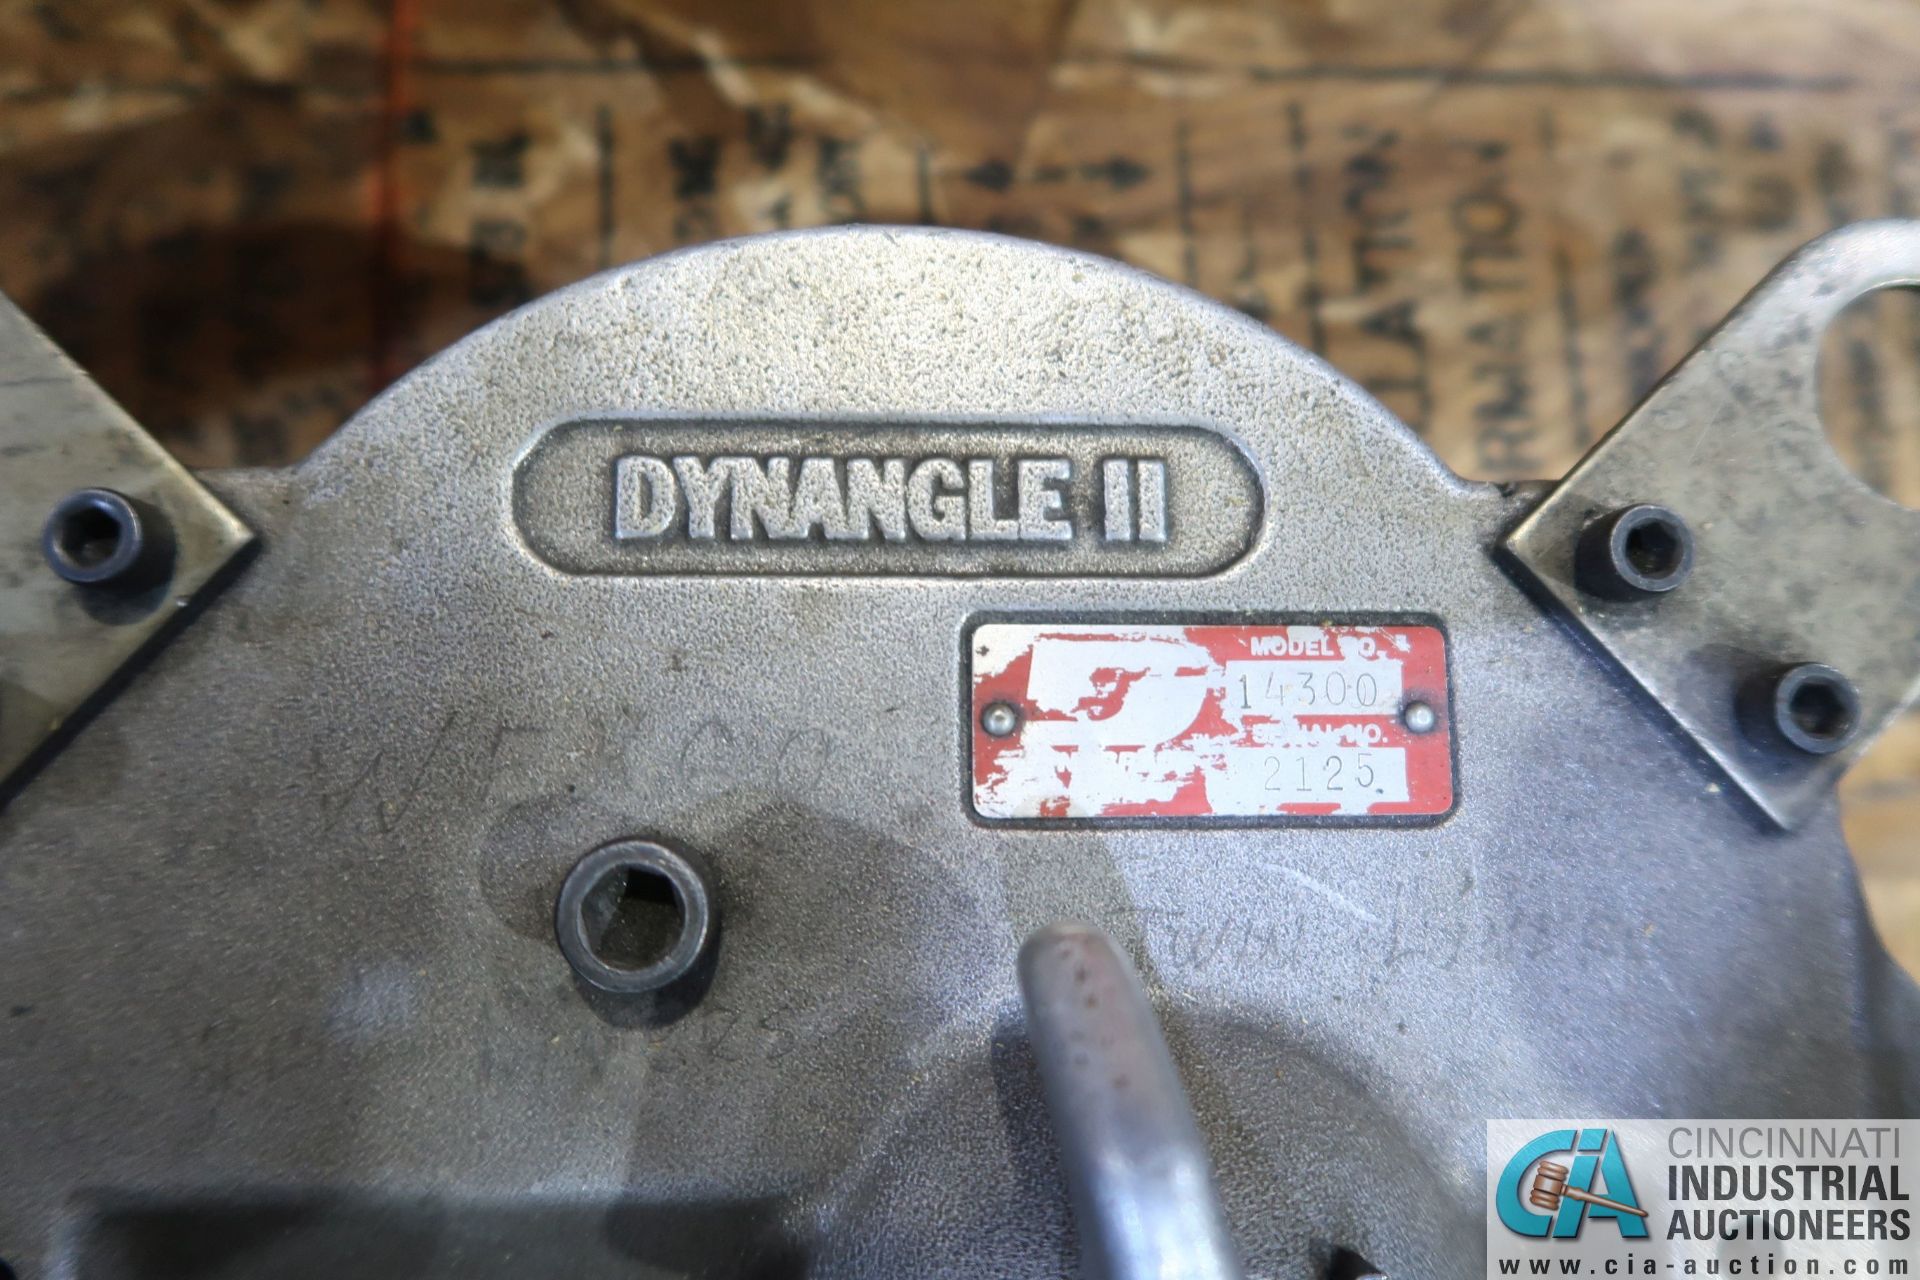 DYNABRADE MODEL 14300 DYNANGLE II PNEUMATIC GRINDER - Image 2 of 2